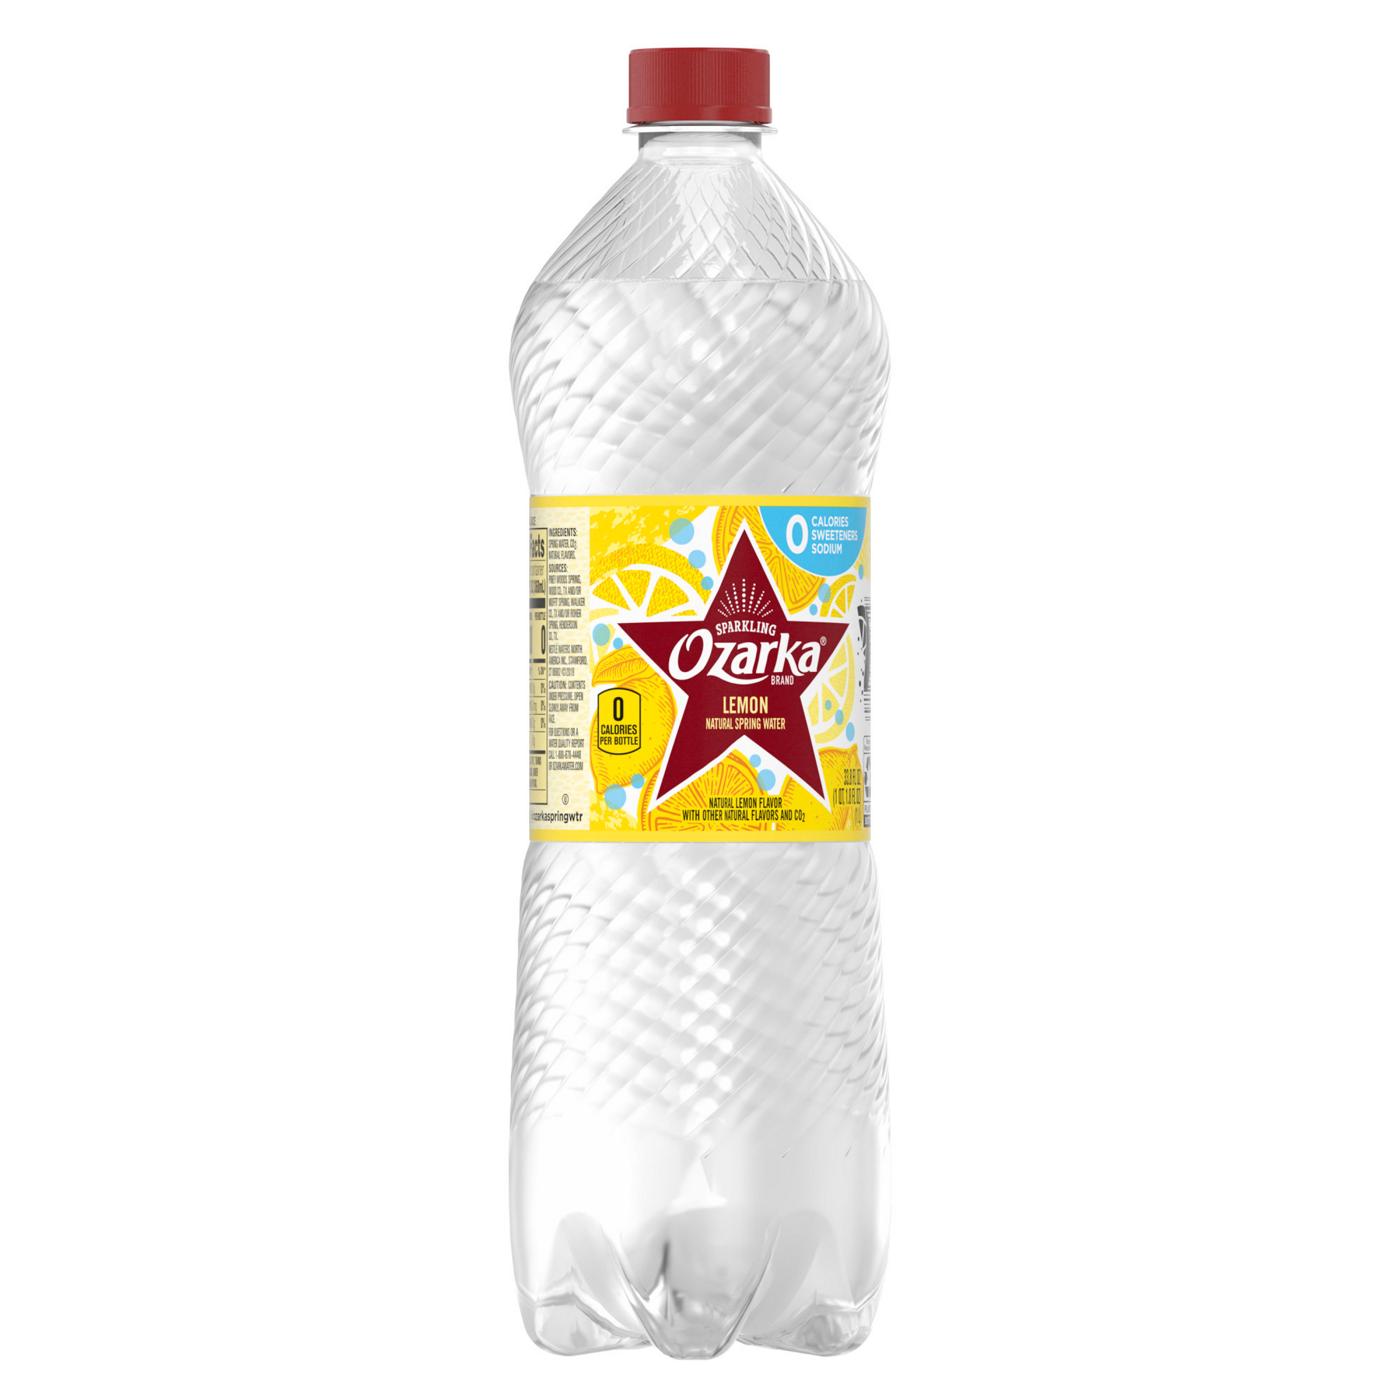 Ozarka Sparkling Water Lively Lemon; image 2 of 2